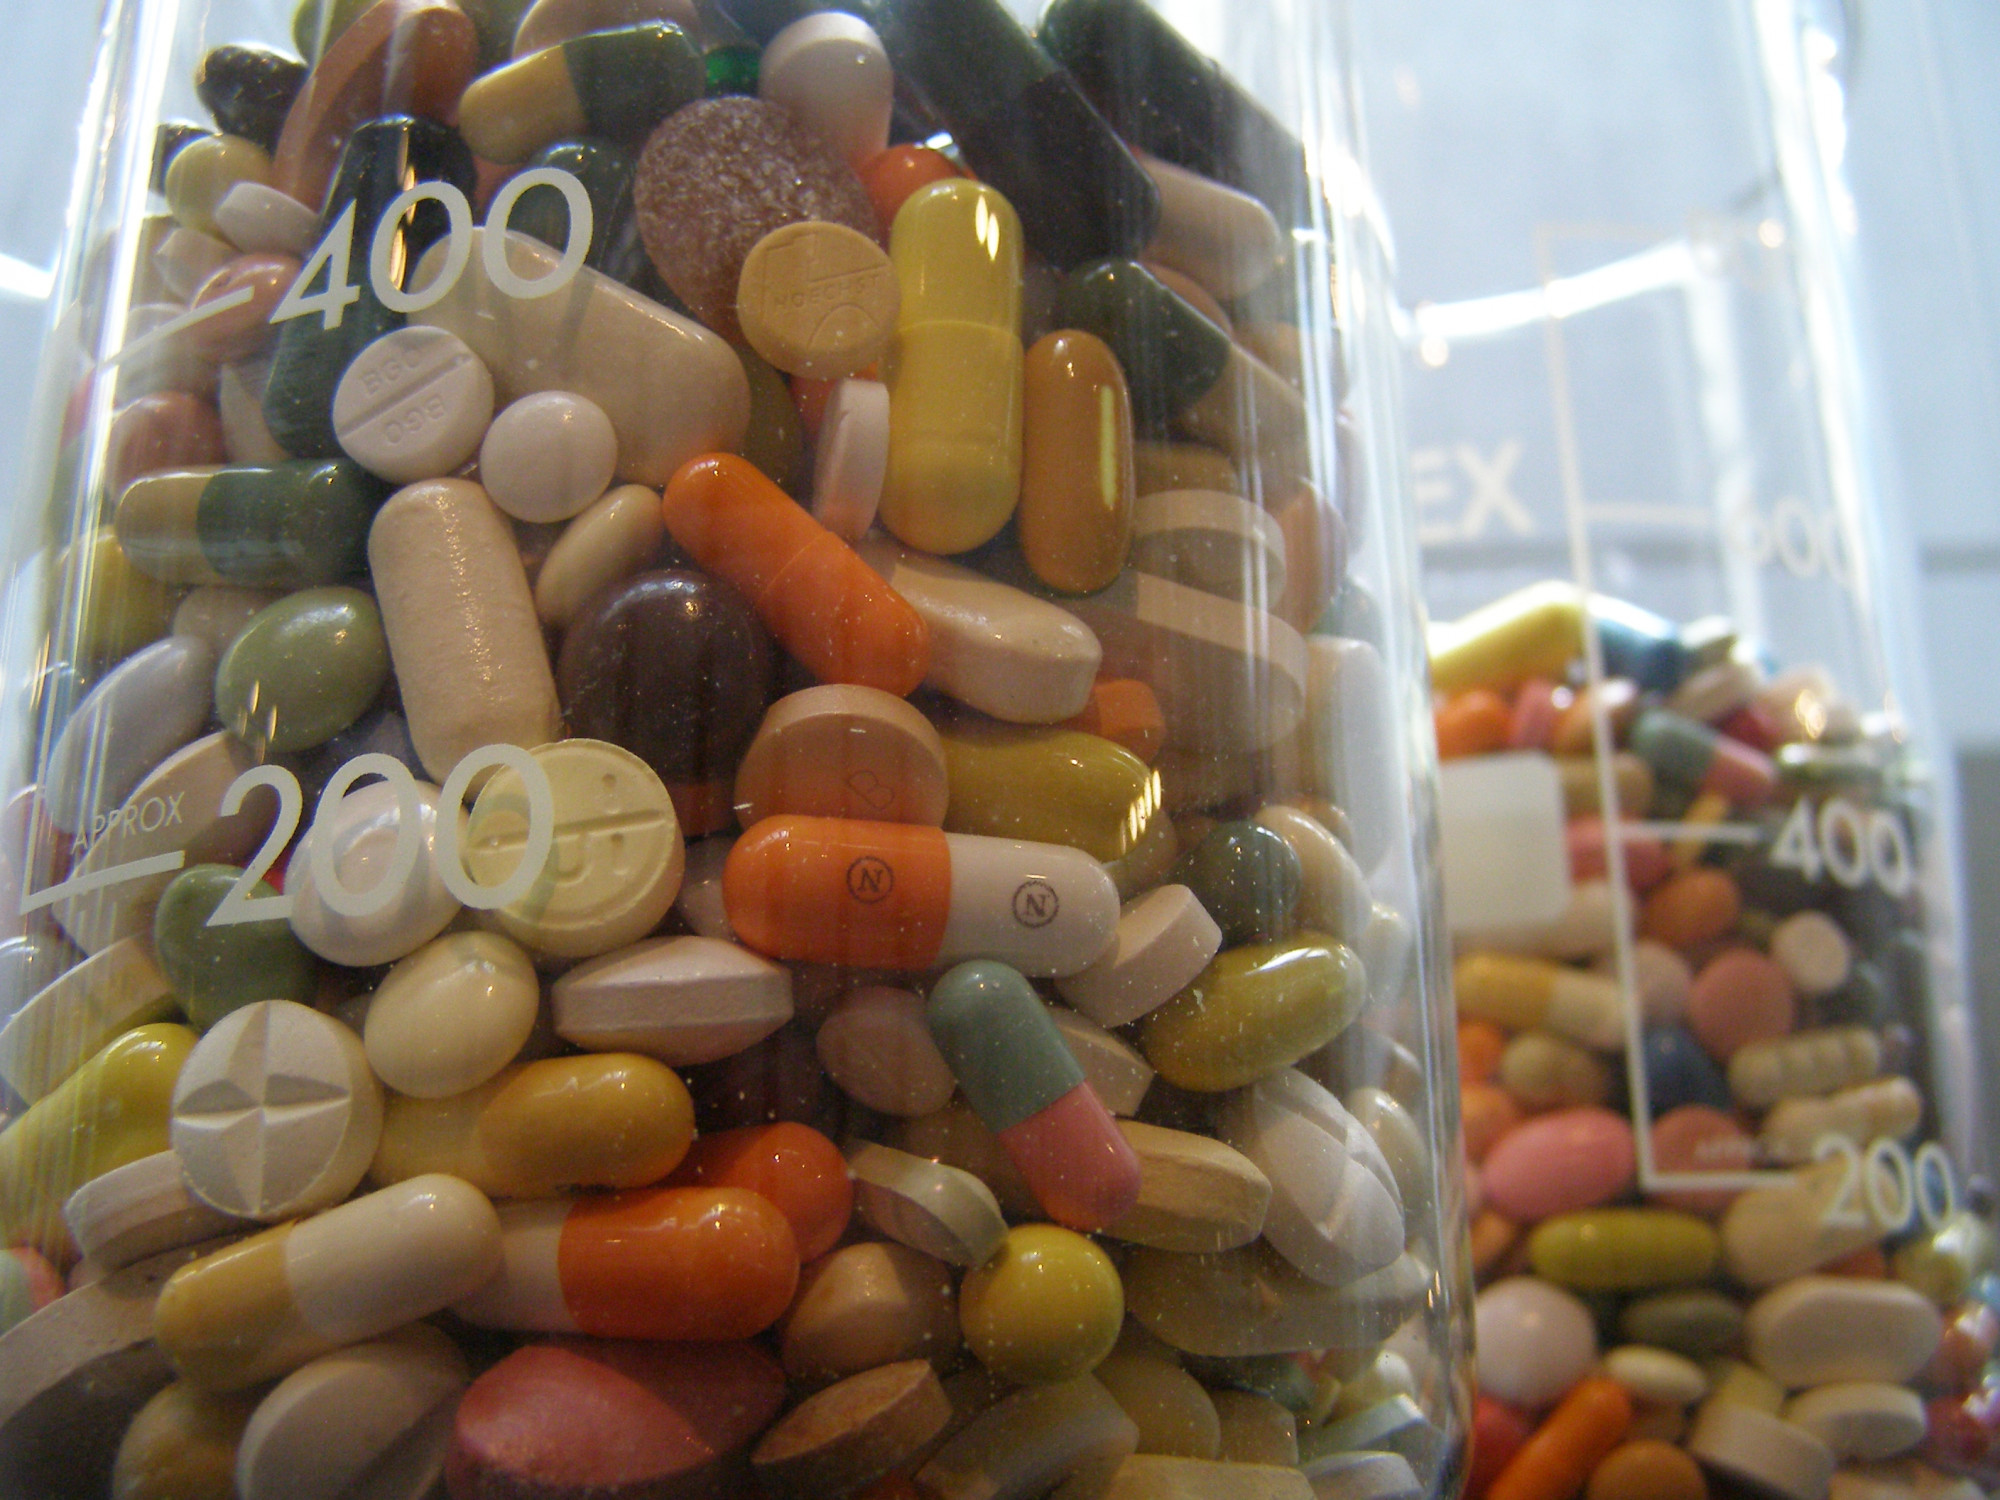 A legelterjedtebb antidepresszánsok jelentősen hozzájárulnak az antibiotikum-rezisztens baktériumok evolúciójához